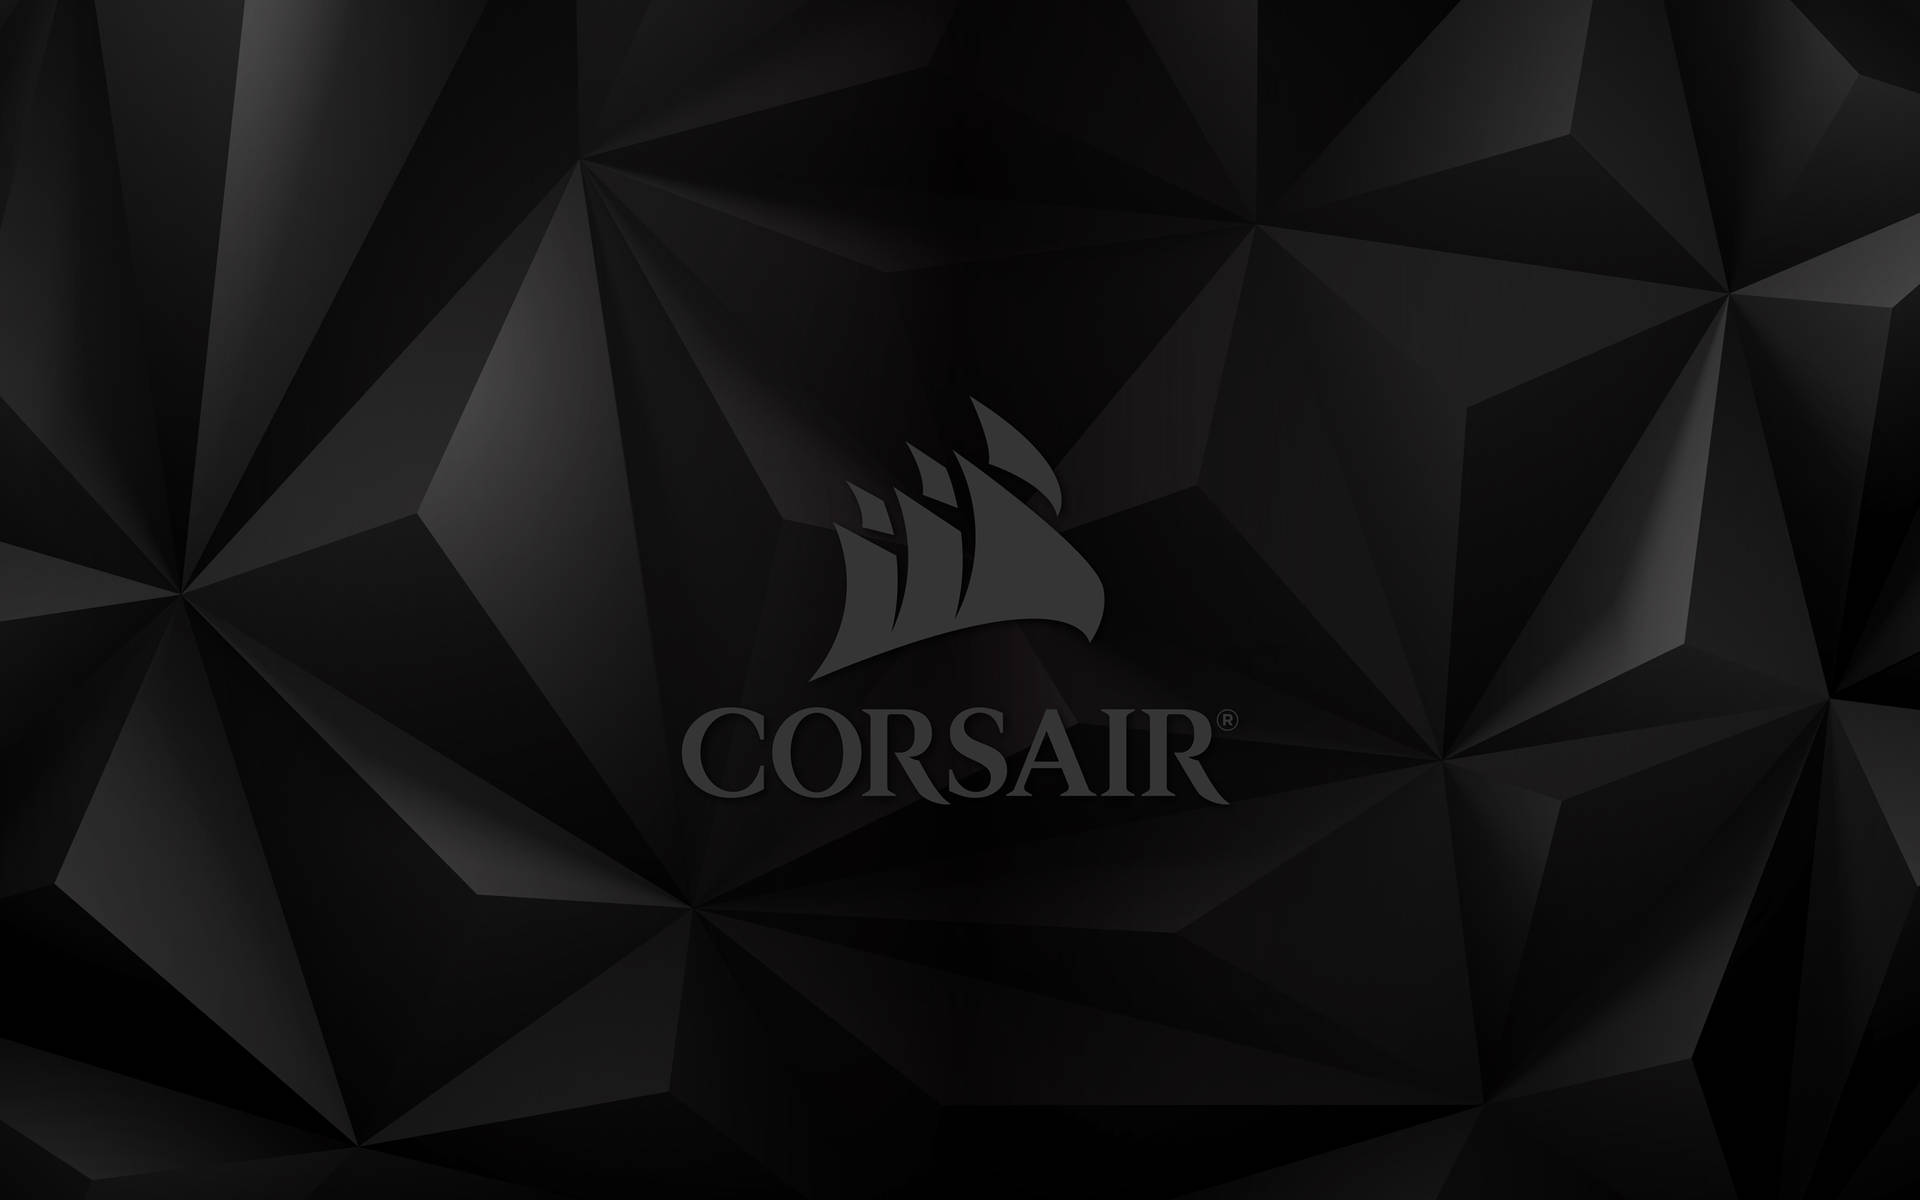 Corsair Gamer Logo